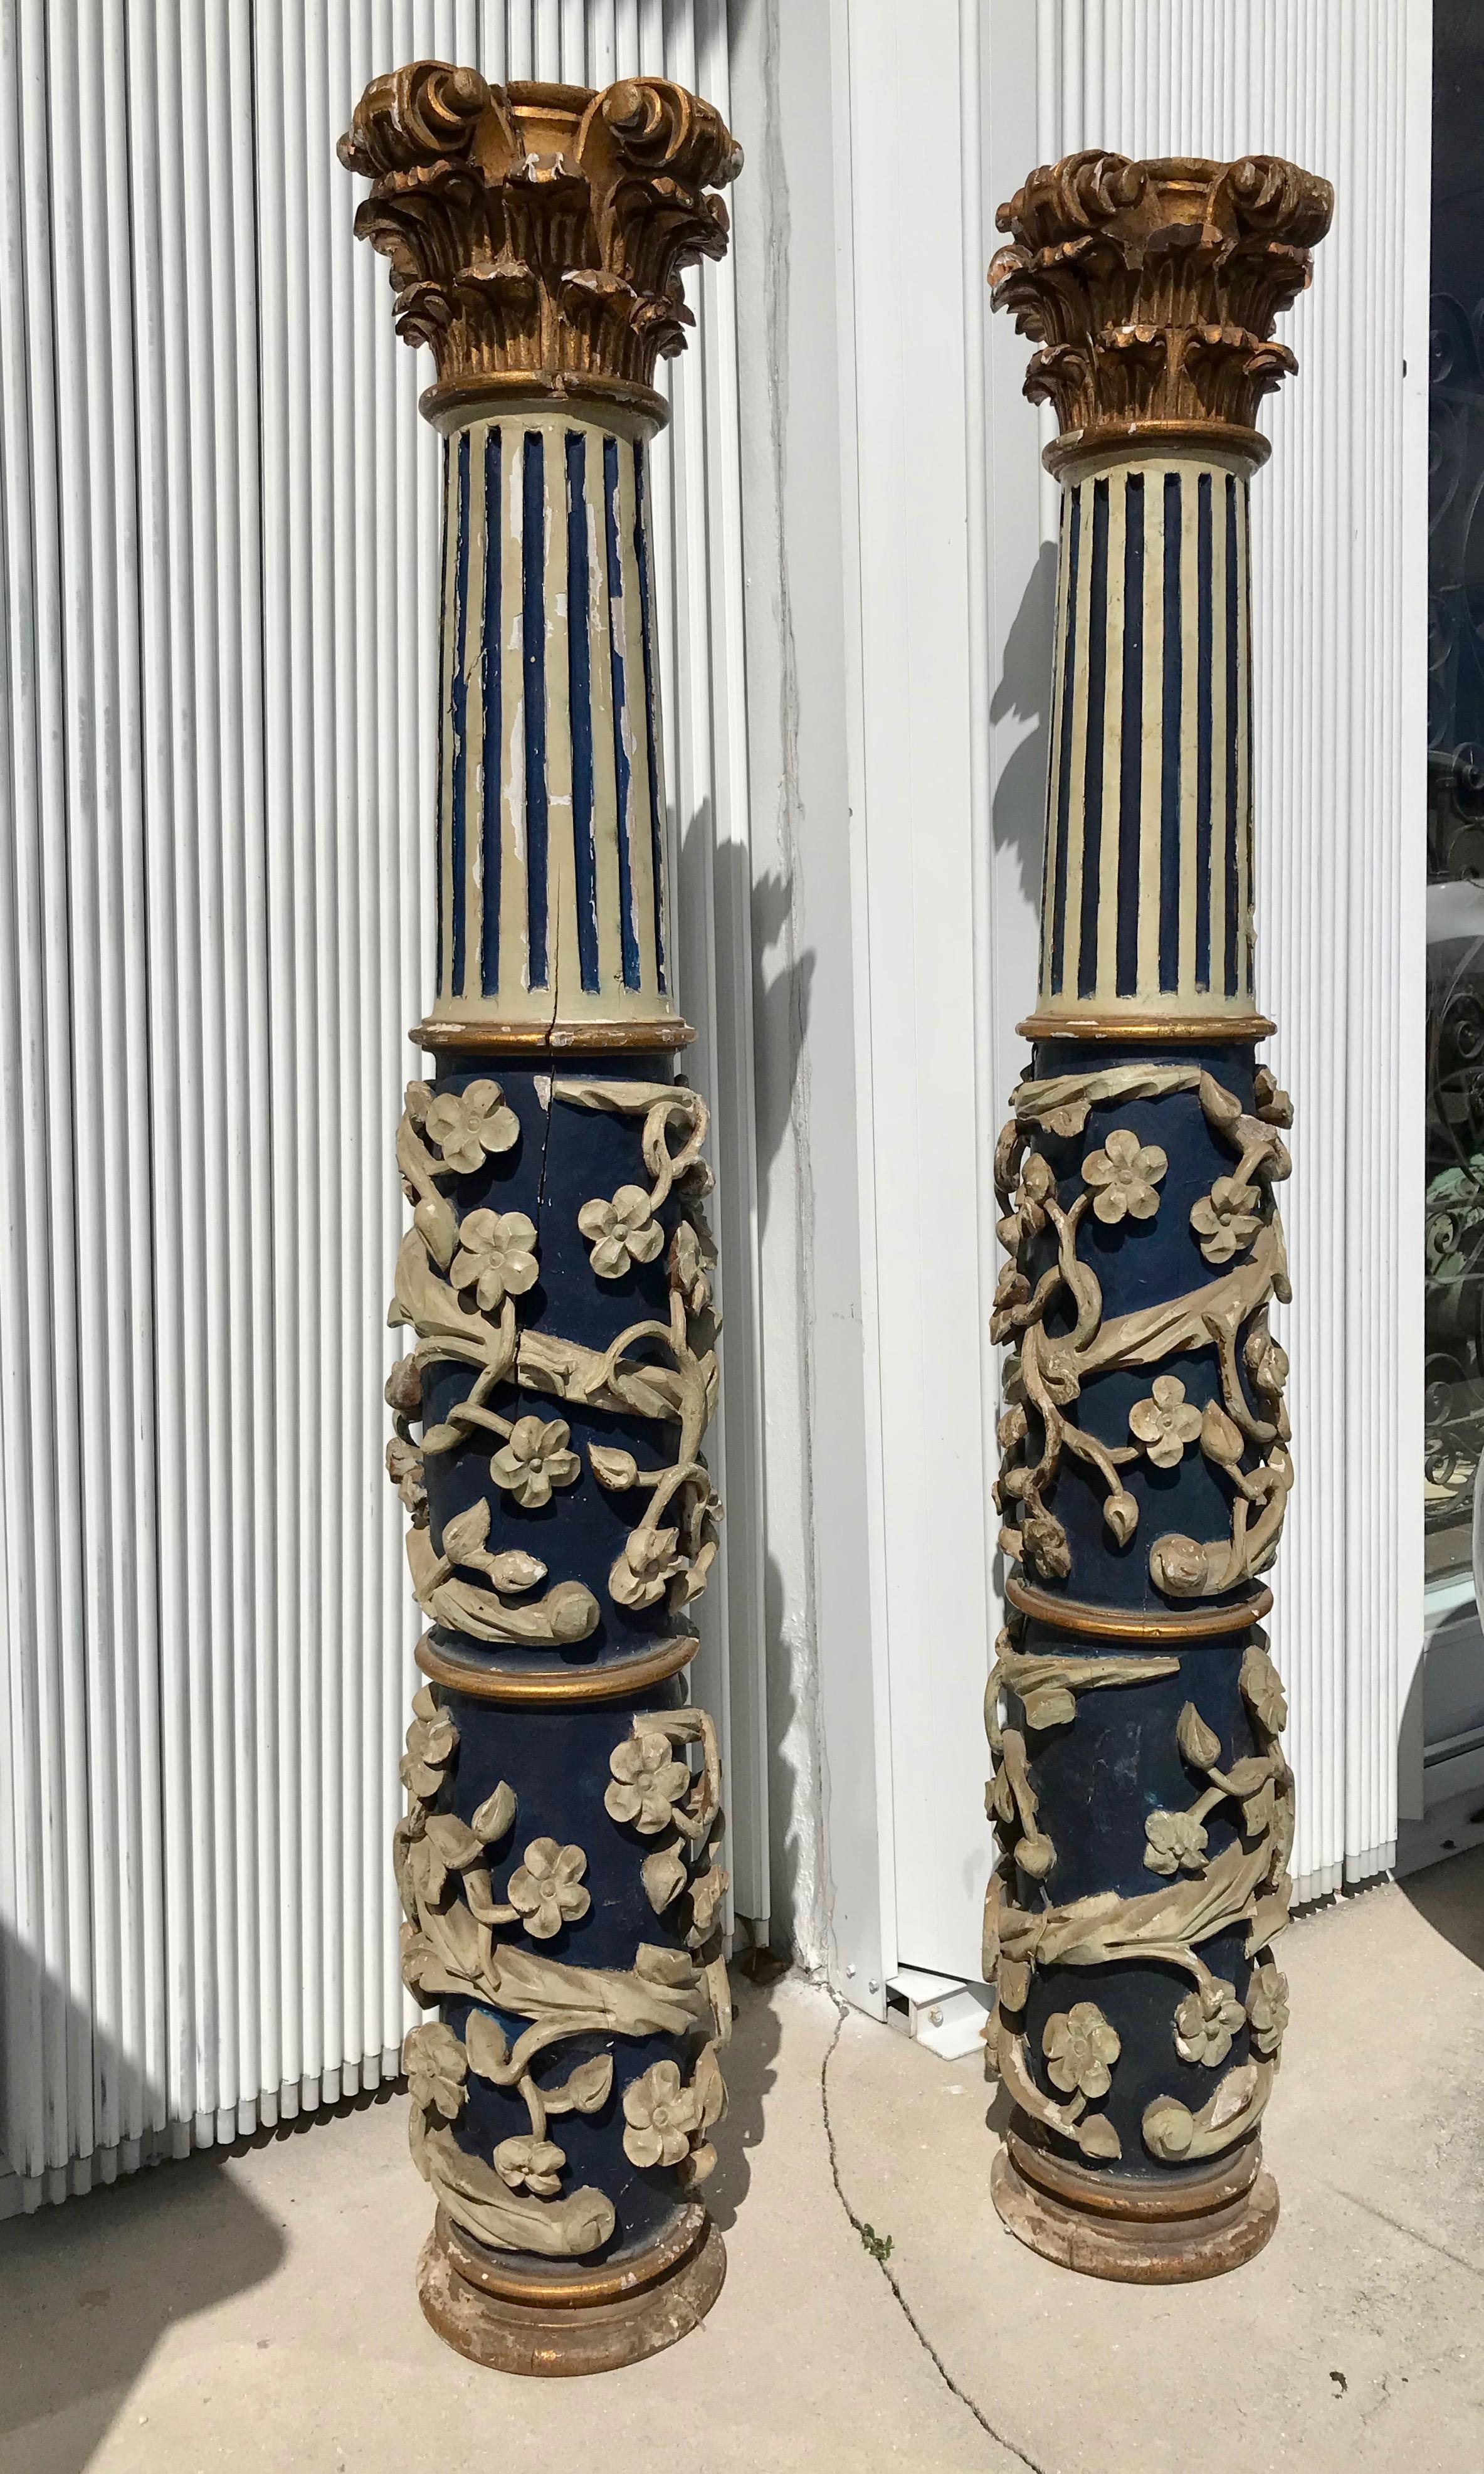 Aufwändig geschnitzt mit einer vorspringenden Blattranke, die den Sockel der Säulen umgibt, die oben geriffelt und mit vergoldetem Holz ausgestattet sind 
Hauptstädte. Ein seltenes und bedeutendes Paar.